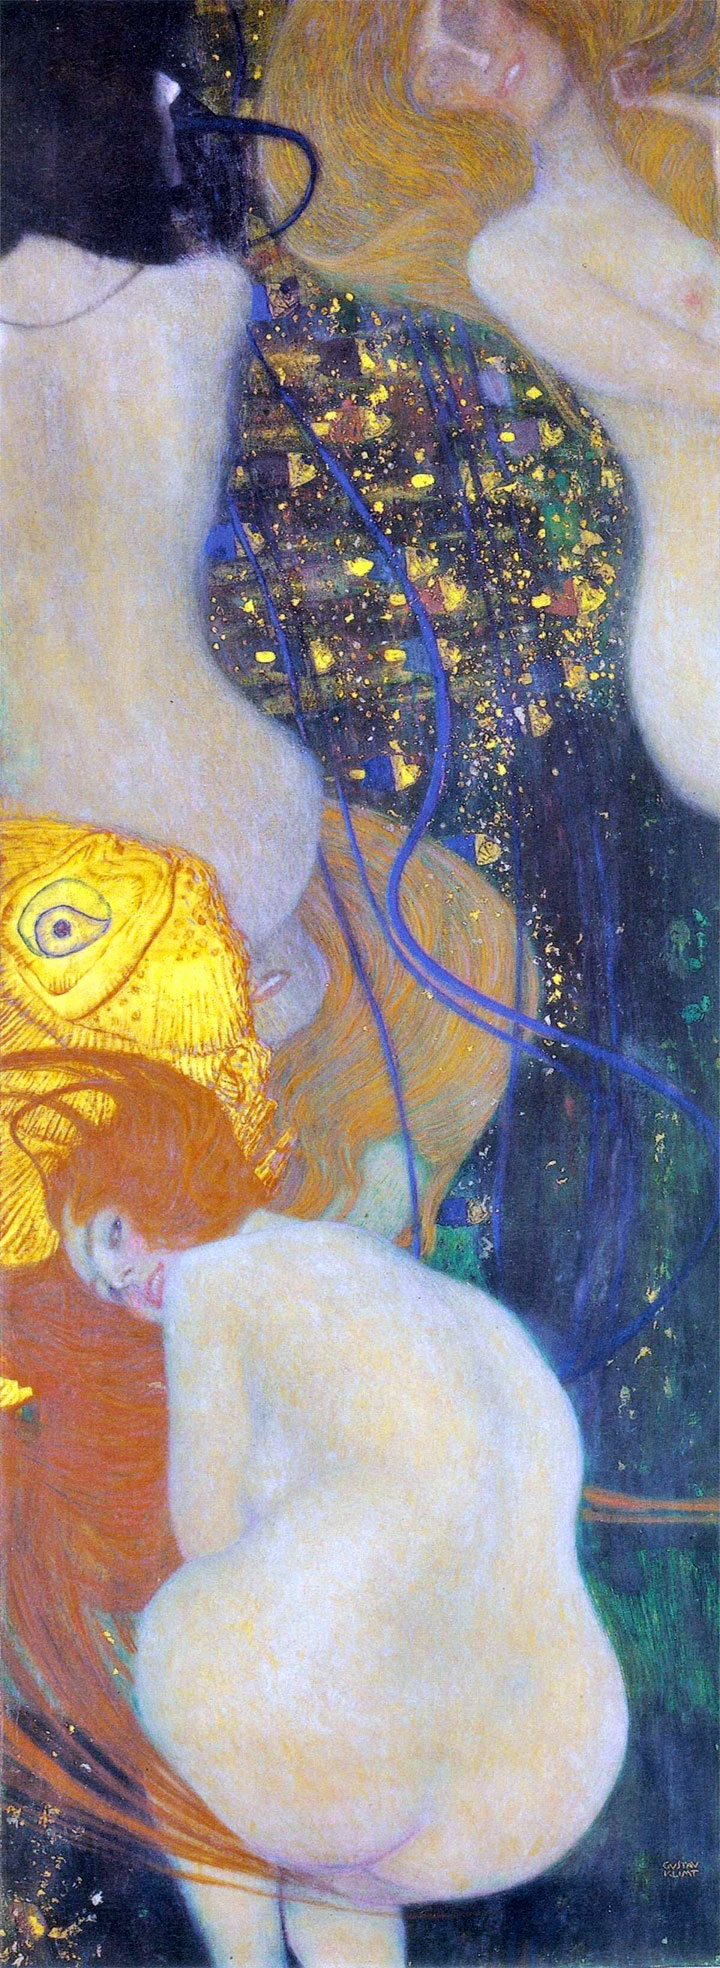 Pesci d'oro (Goldfish) Klimt, 1902